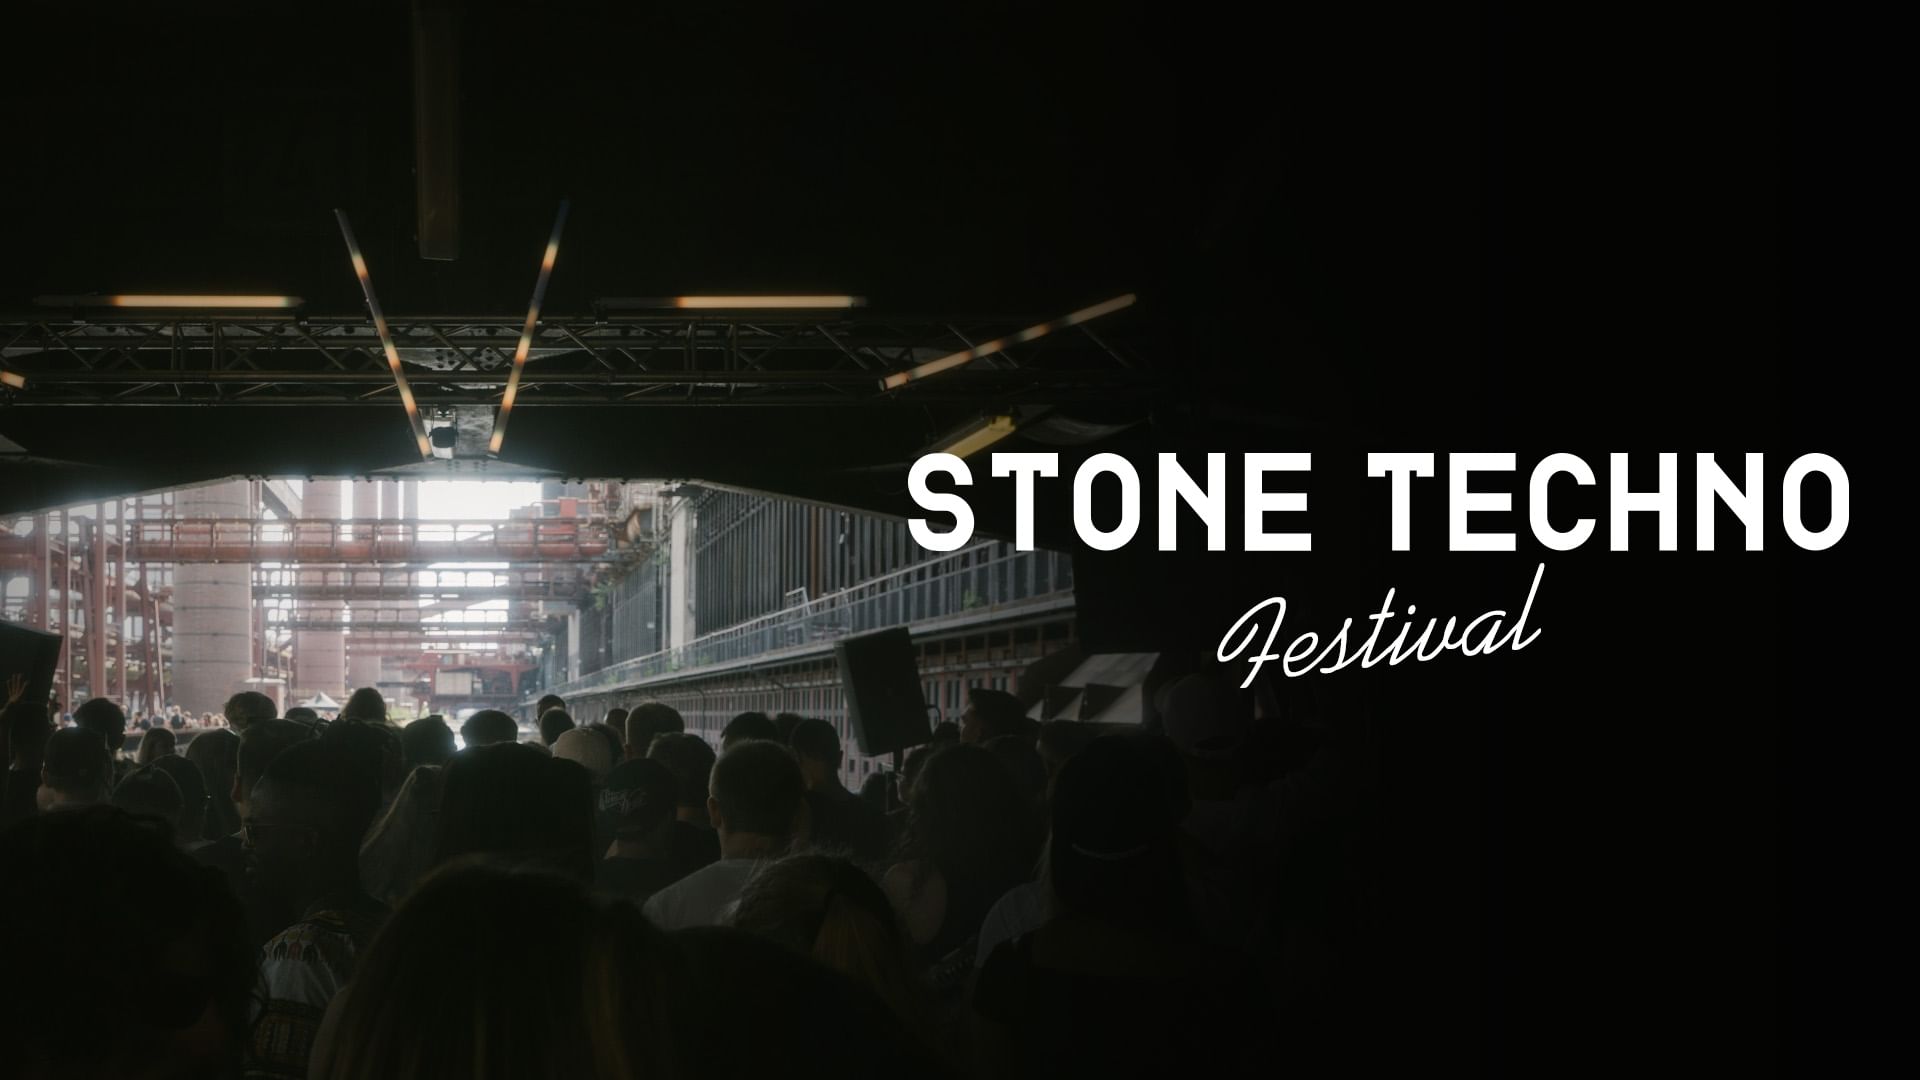 Stone Techno Festival - ARTE Concert | ARTE in italiano